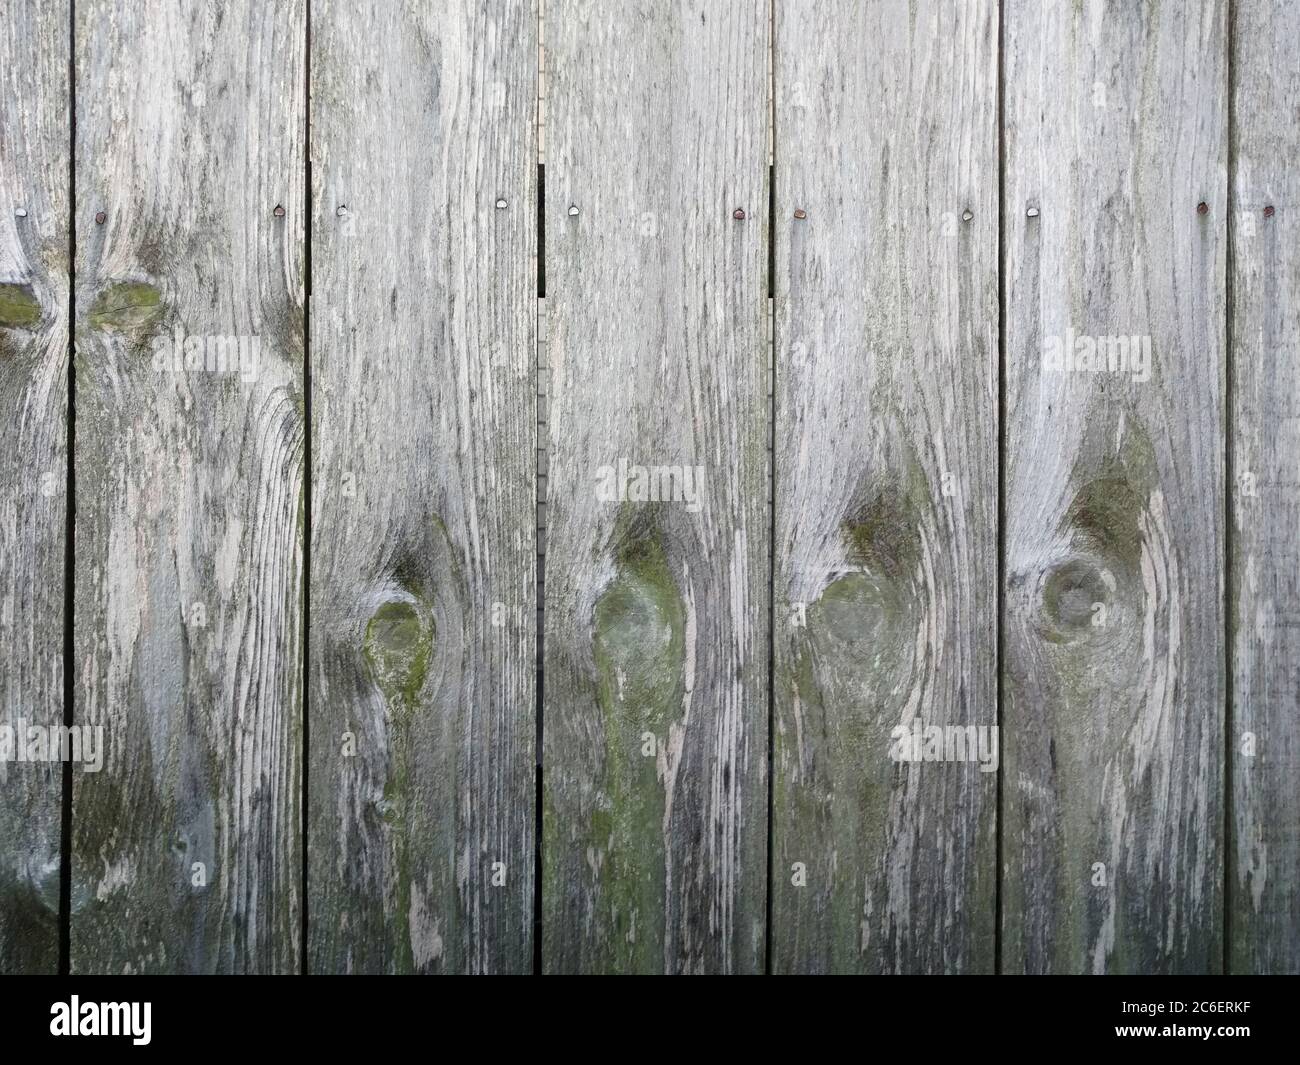 Eine grau verwitterte Holz Zaun Wand Hintergrund Stockfoto